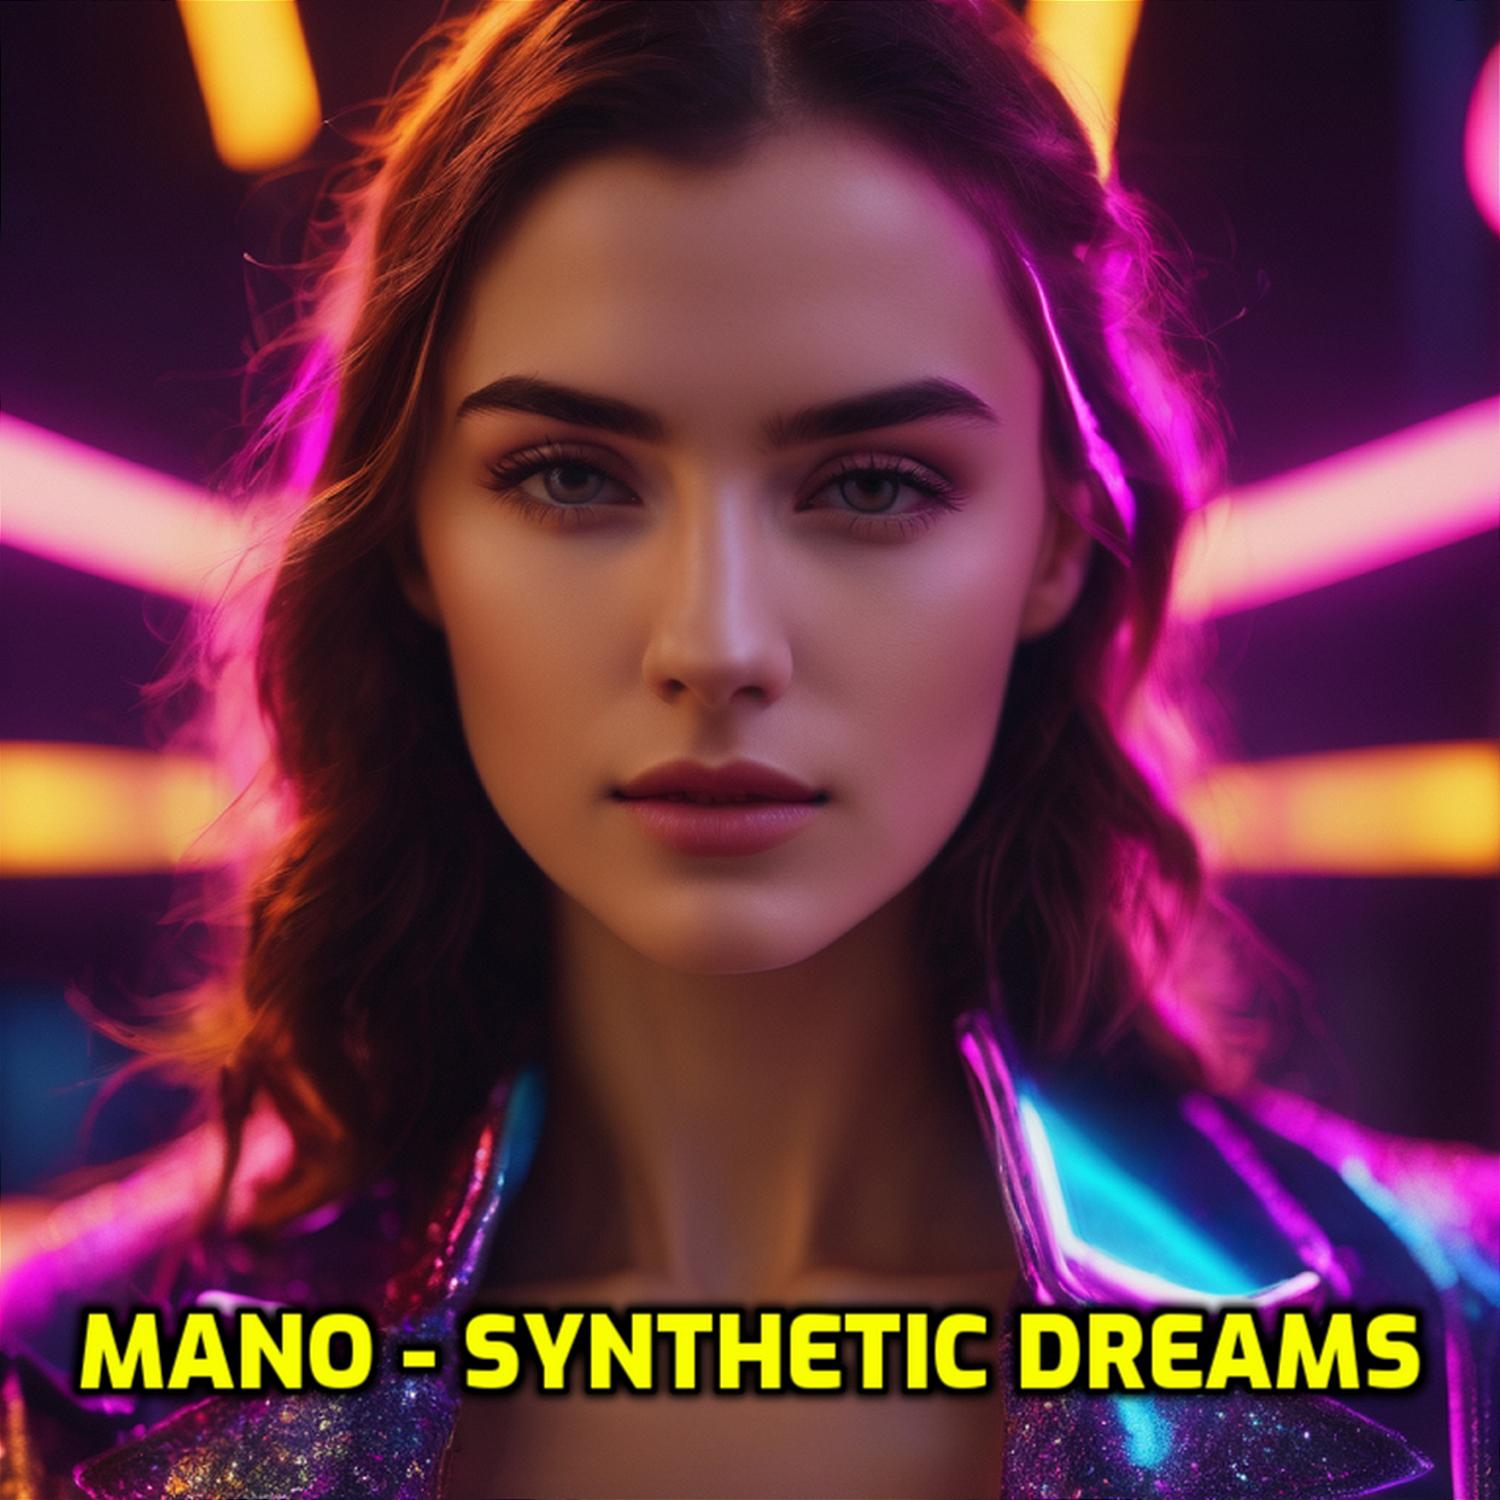 Mano - Synthetic dreams